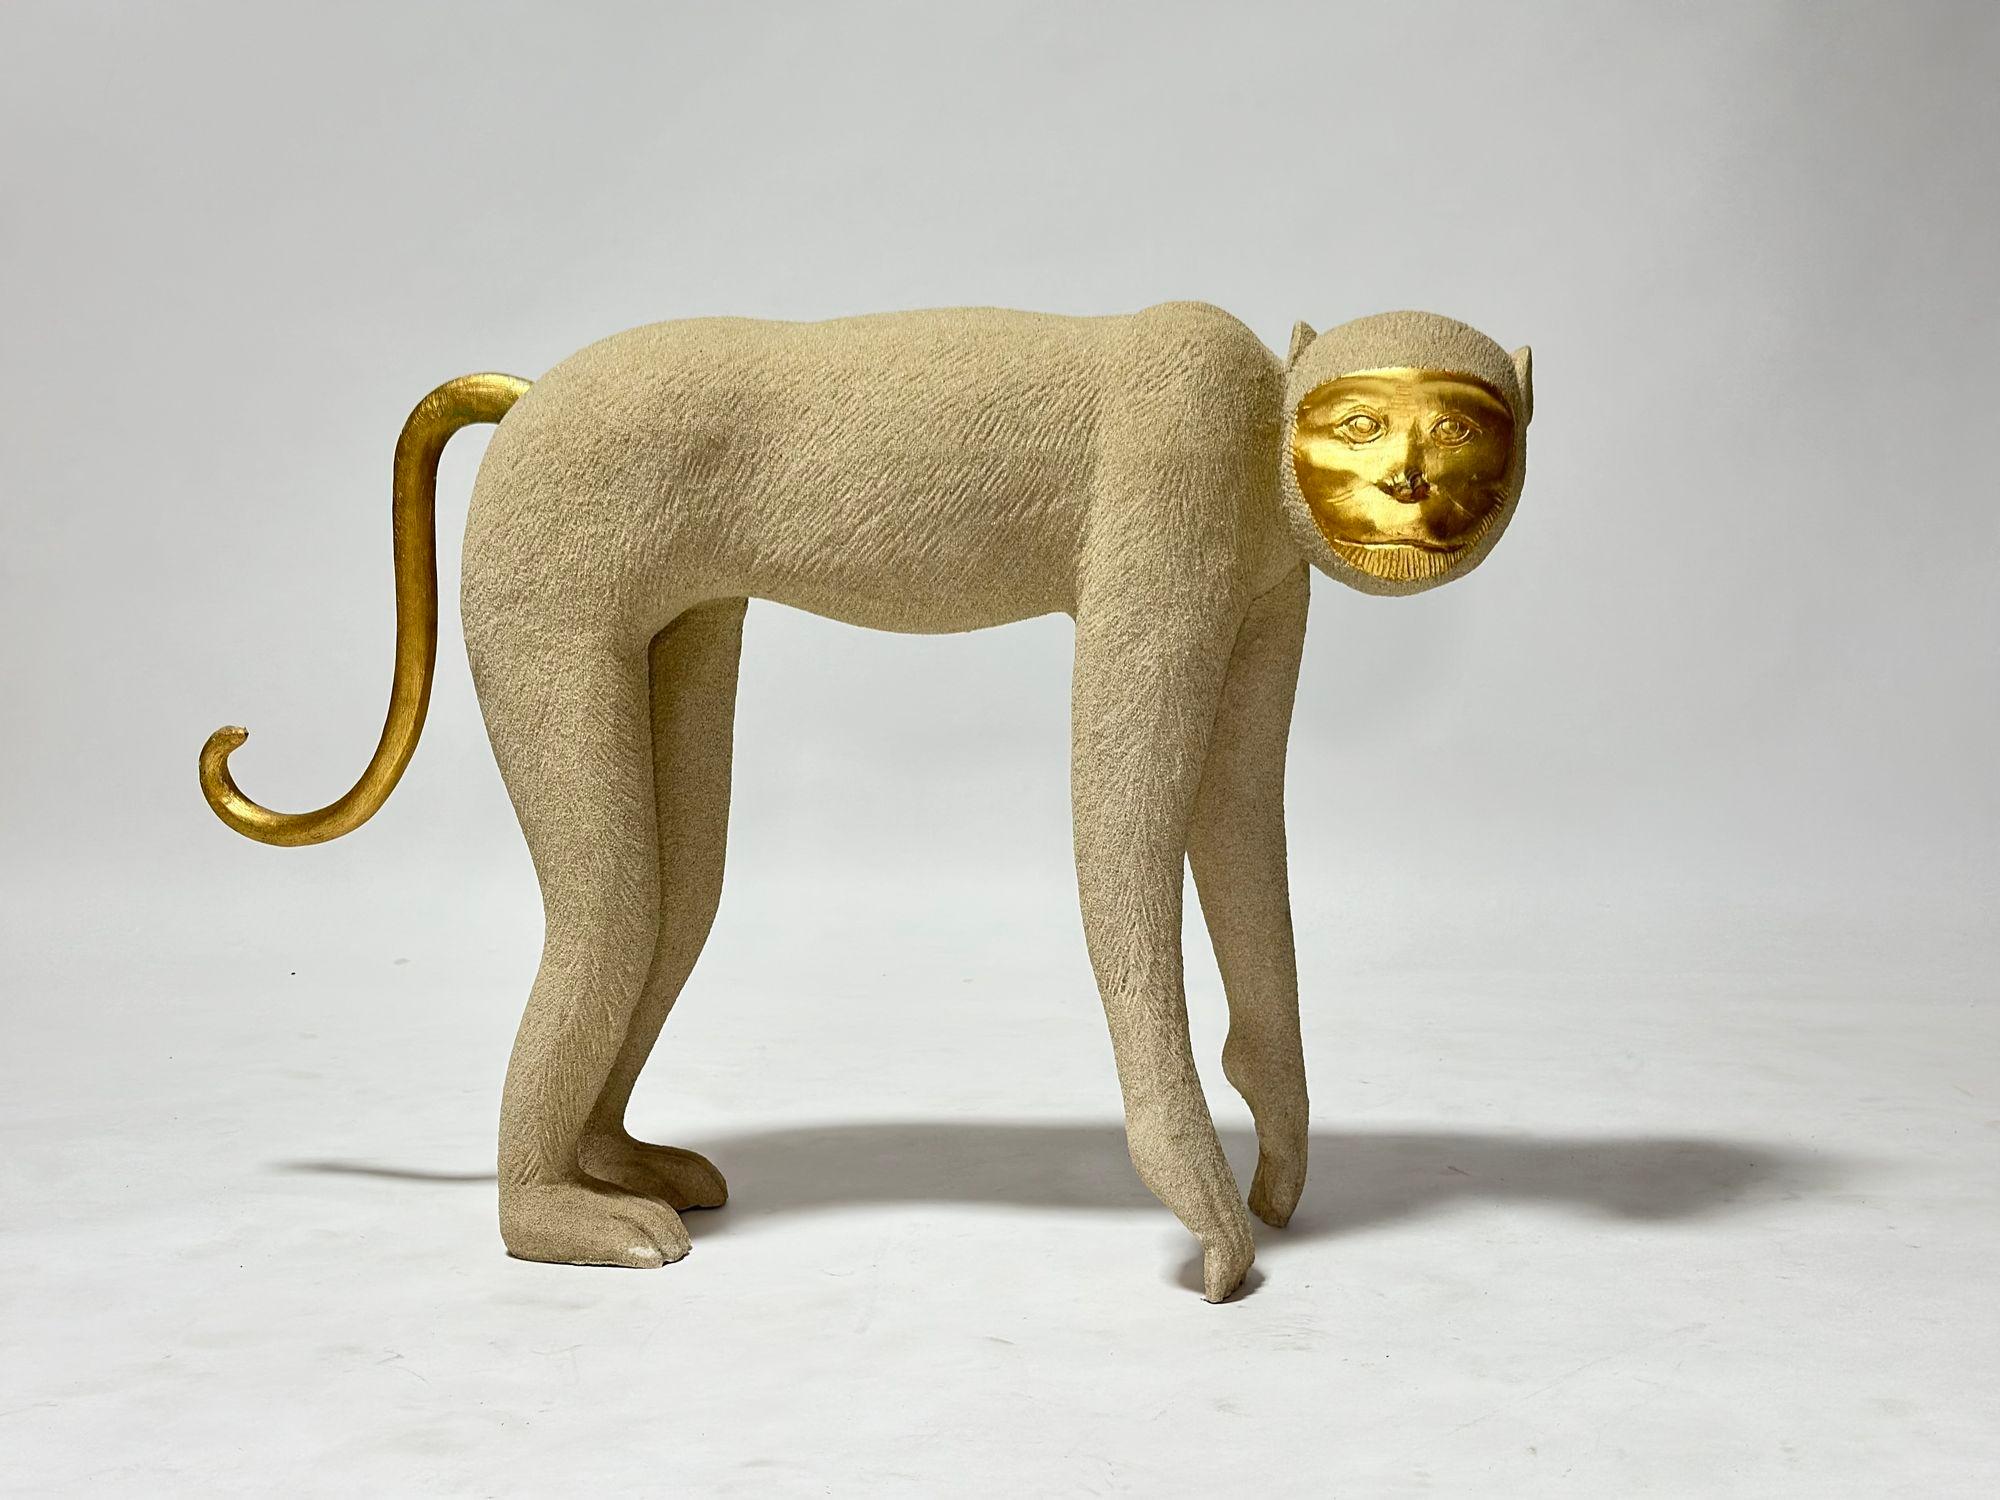 Sculpture de singe grandeur nature, 1980.  Fabriqué en fibre de verre texturée avec une finition sable et des accents dorés sur la face.